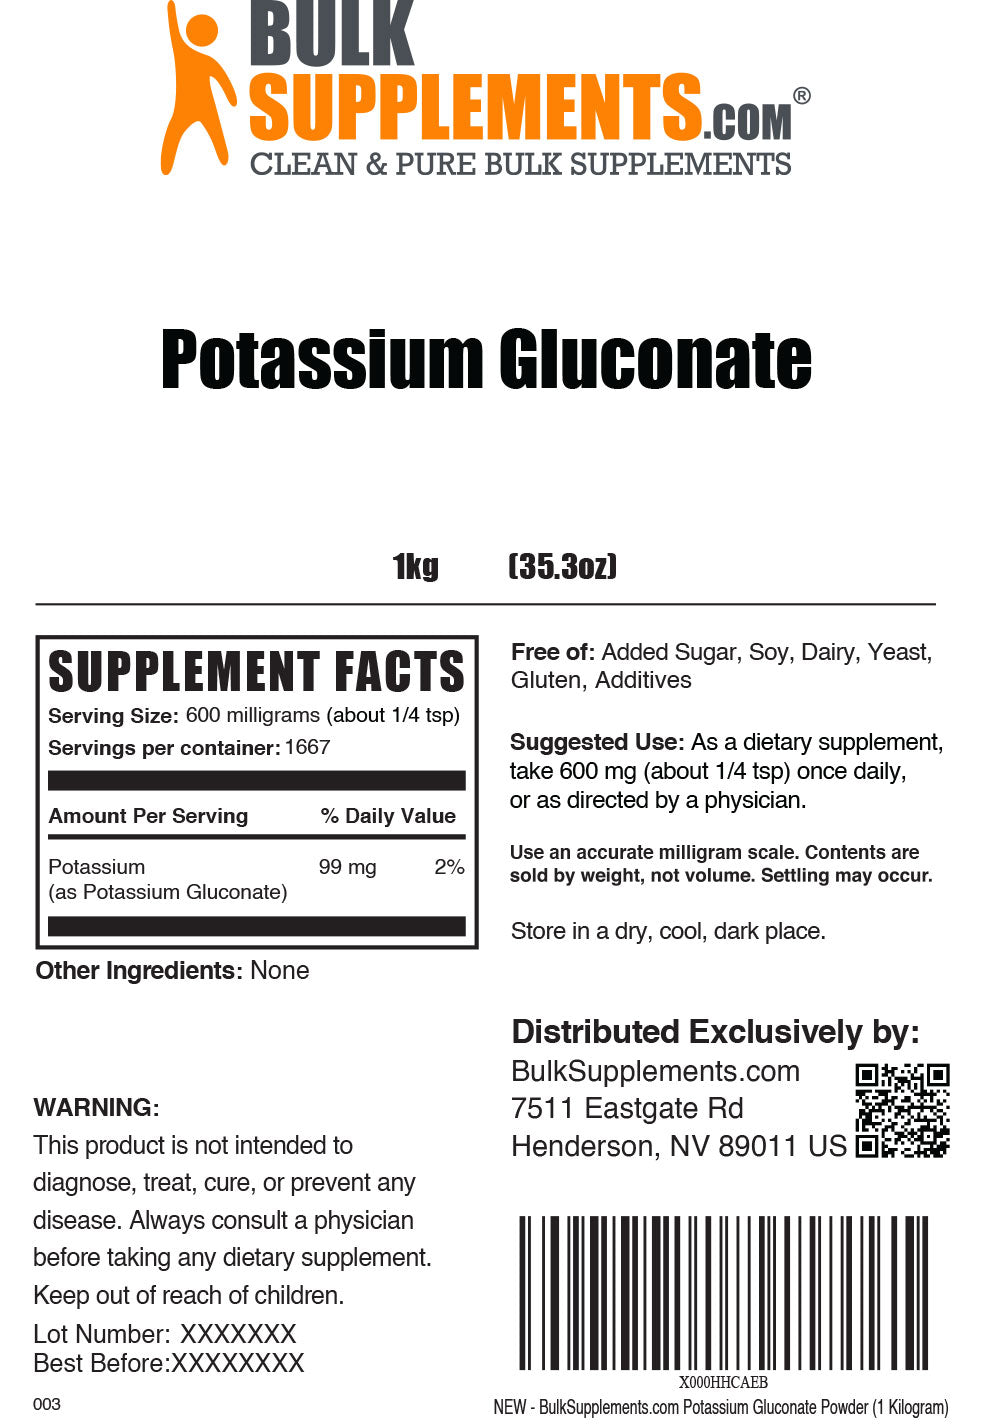 Potassium Gluconate powder label 1kg